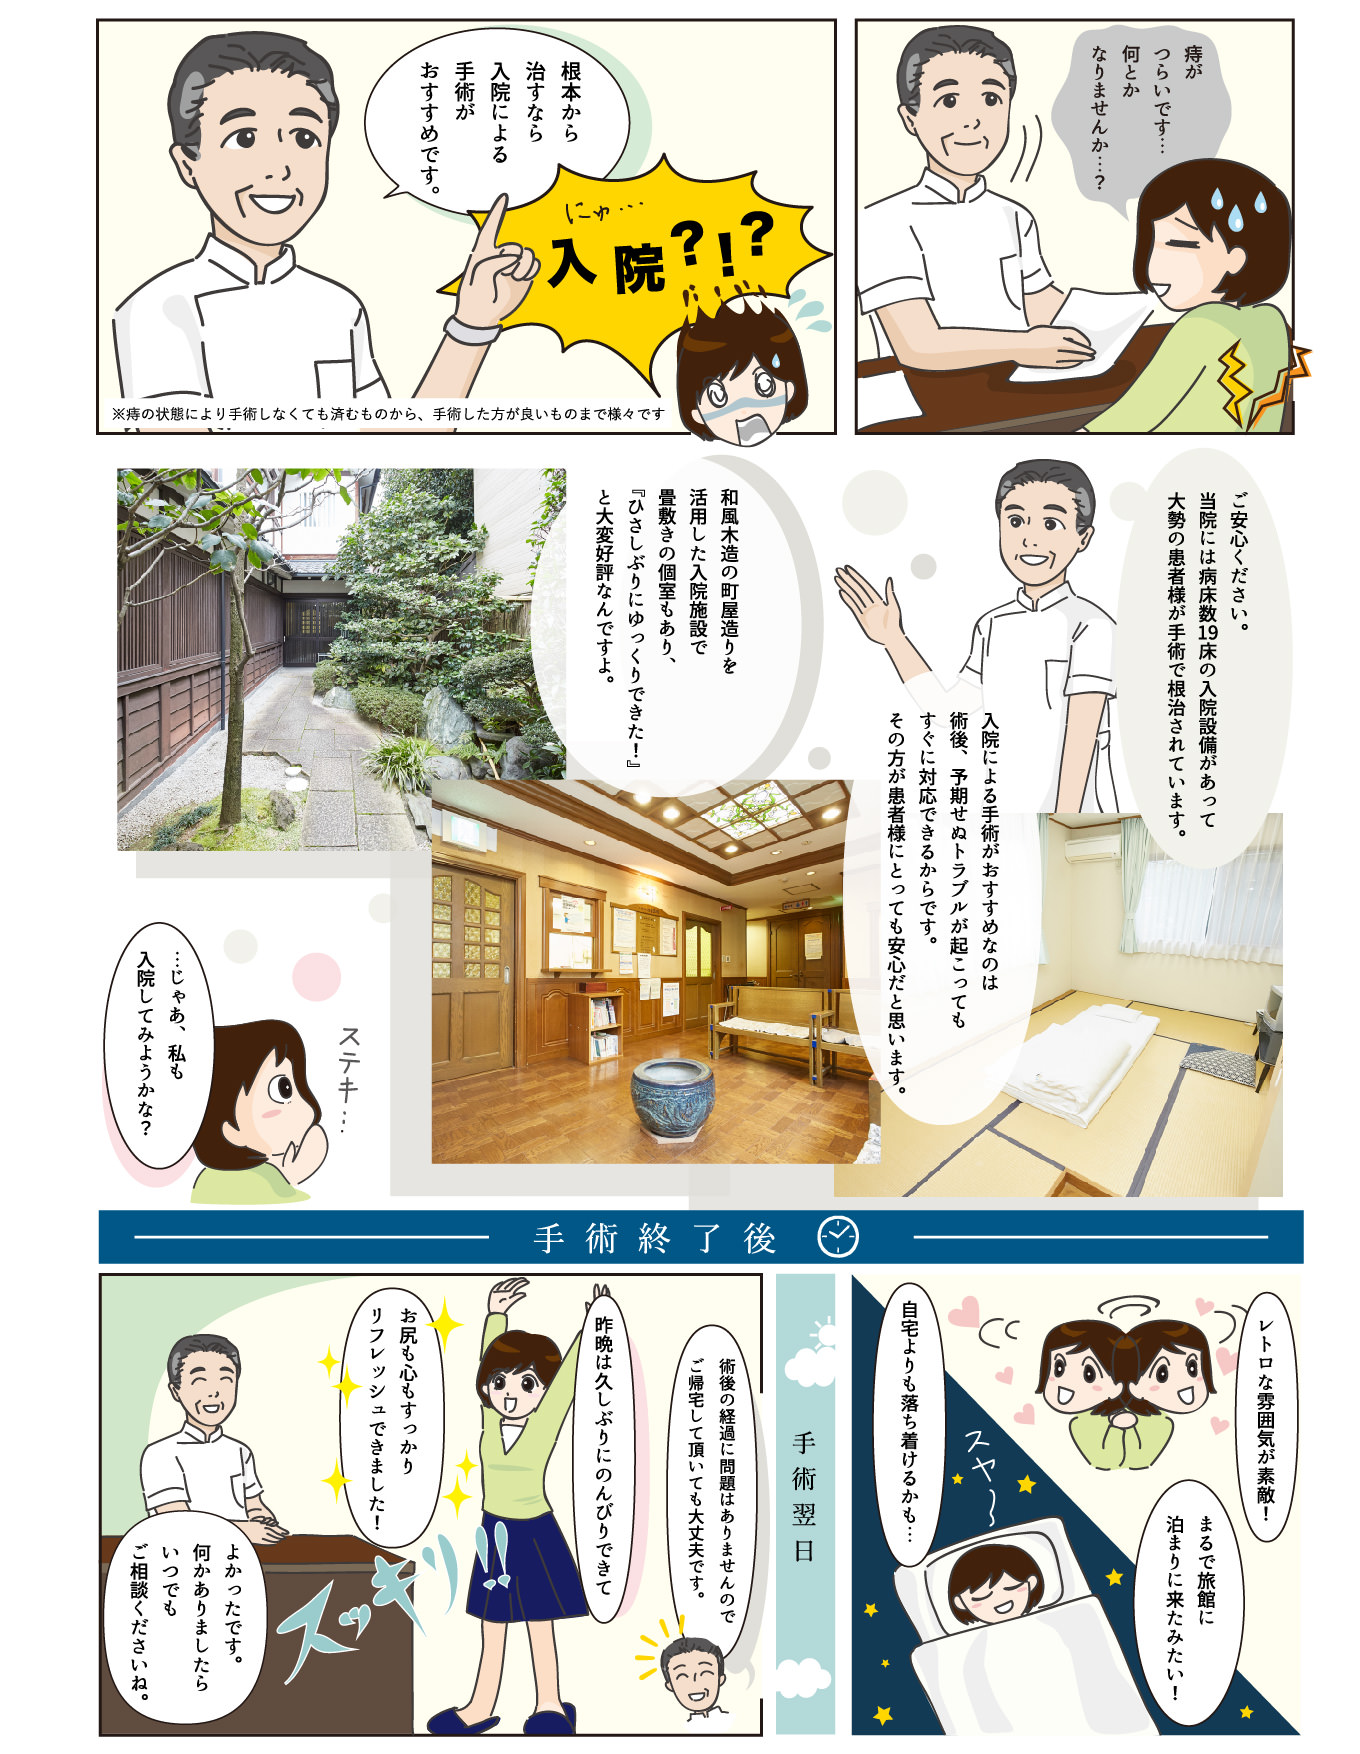 渡邉医院での体験談が漫画になりました 京都市上京区の渡邉医院